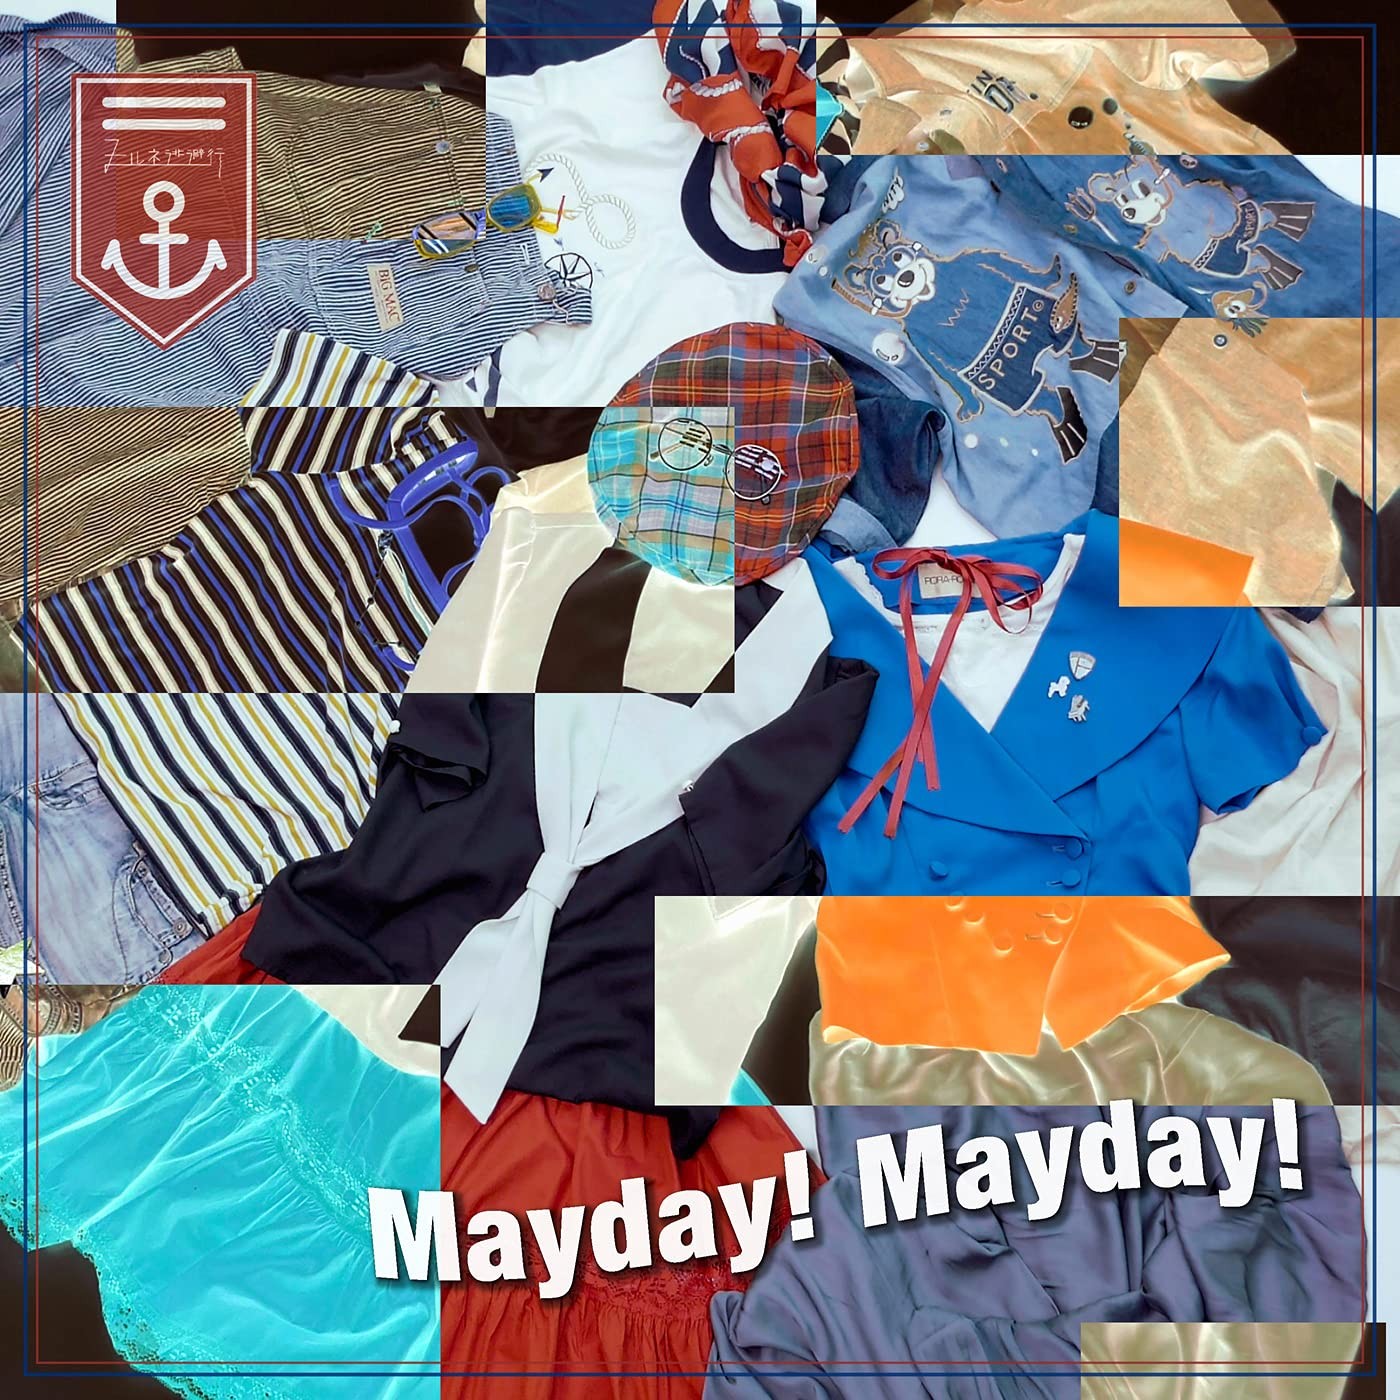 ヒルネ逃避行 (Hirune Tohikou) – Mayday! Mayday! [FLAC / 24bit Lossless / WEB] [2021.05.27]